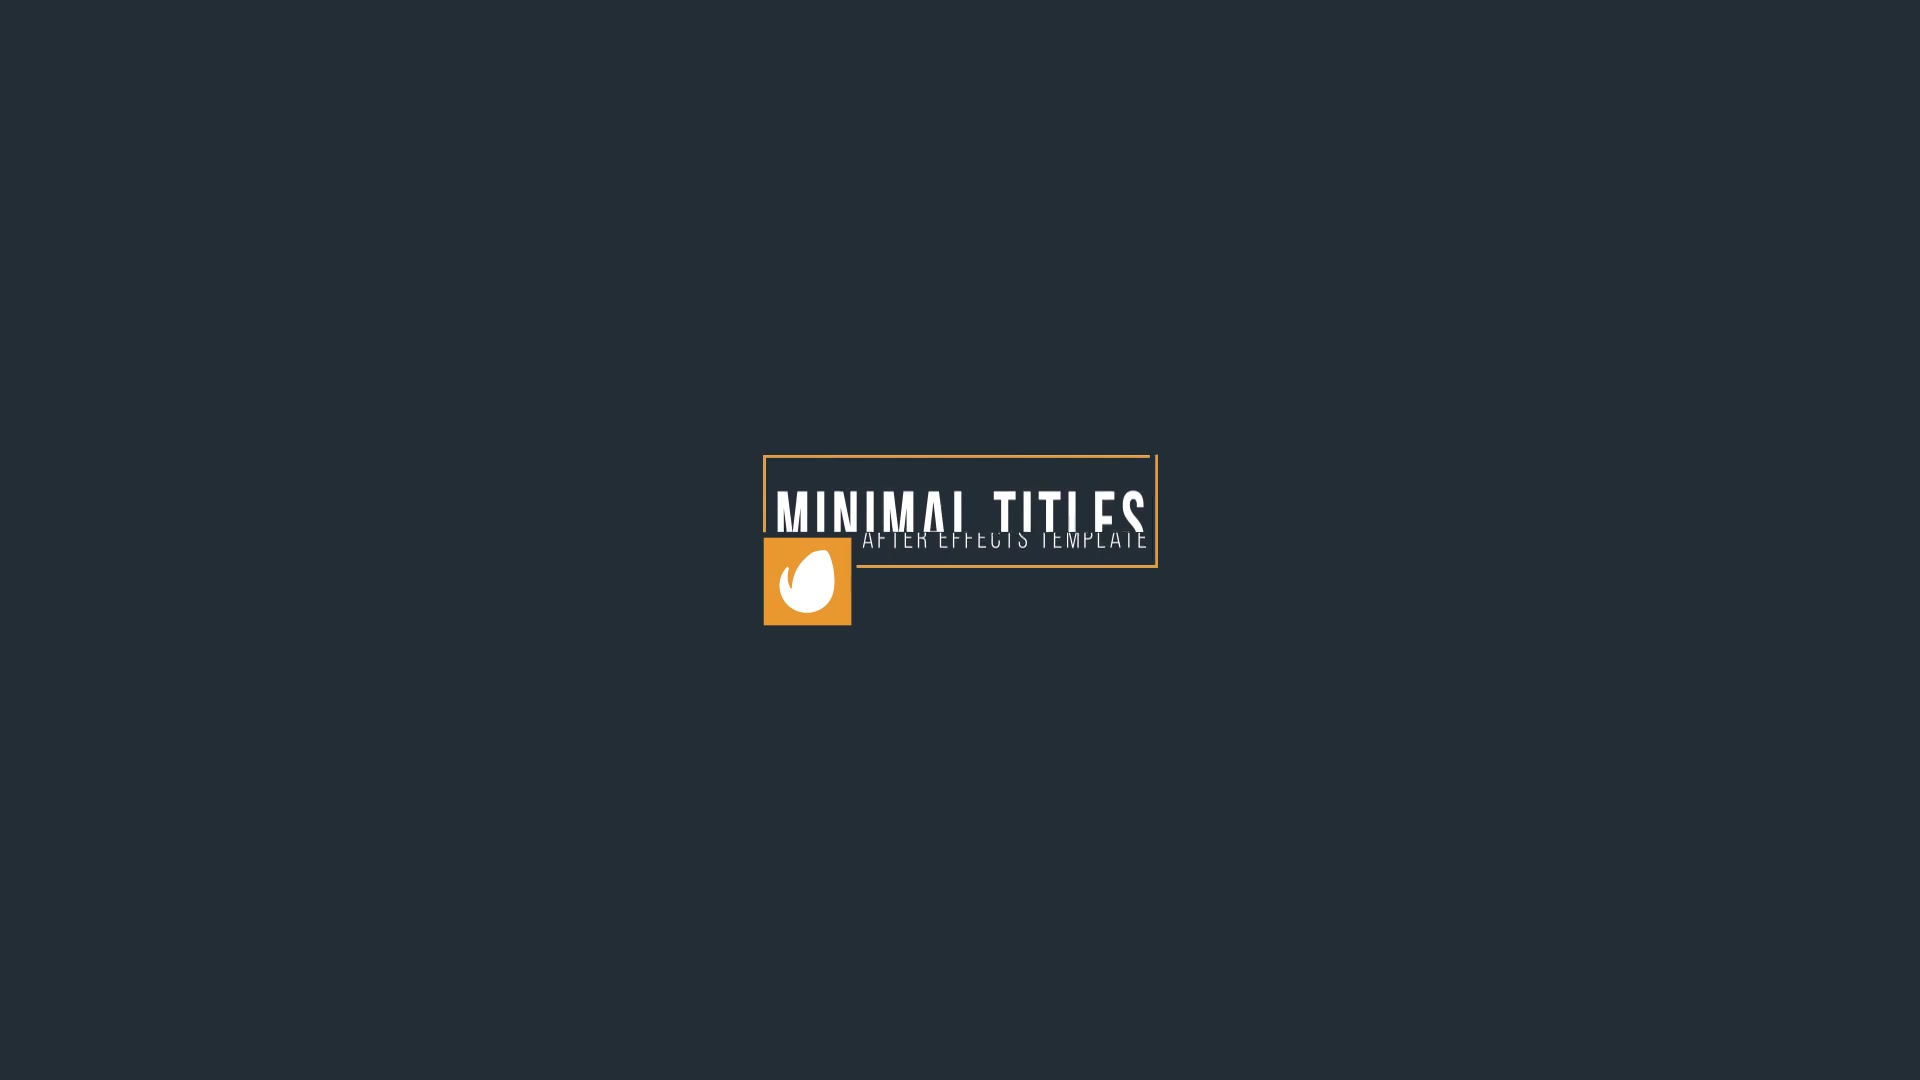 20 Minimal Titles - Download Videohive 15164304